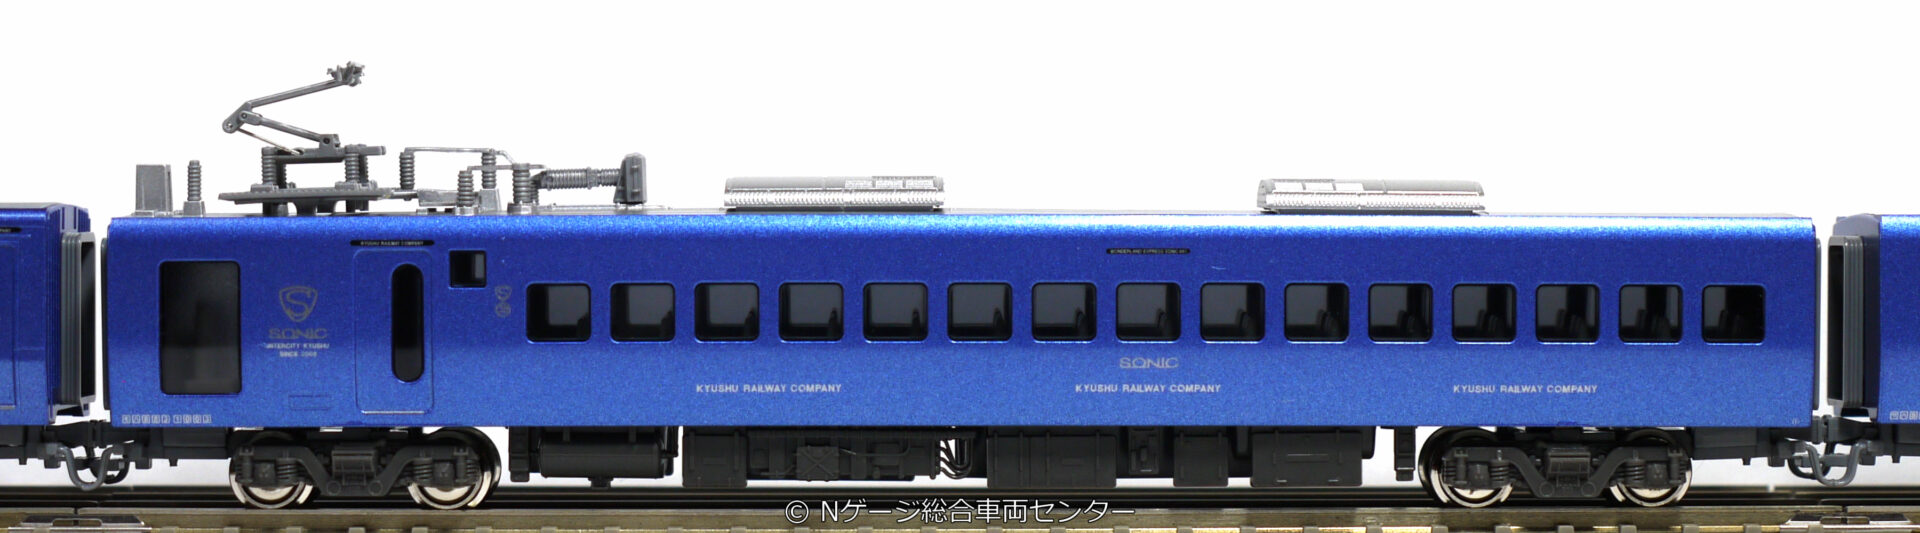 KATO 883系「ソニック」 リニューアル車 7両セット AO-18編成 2020年